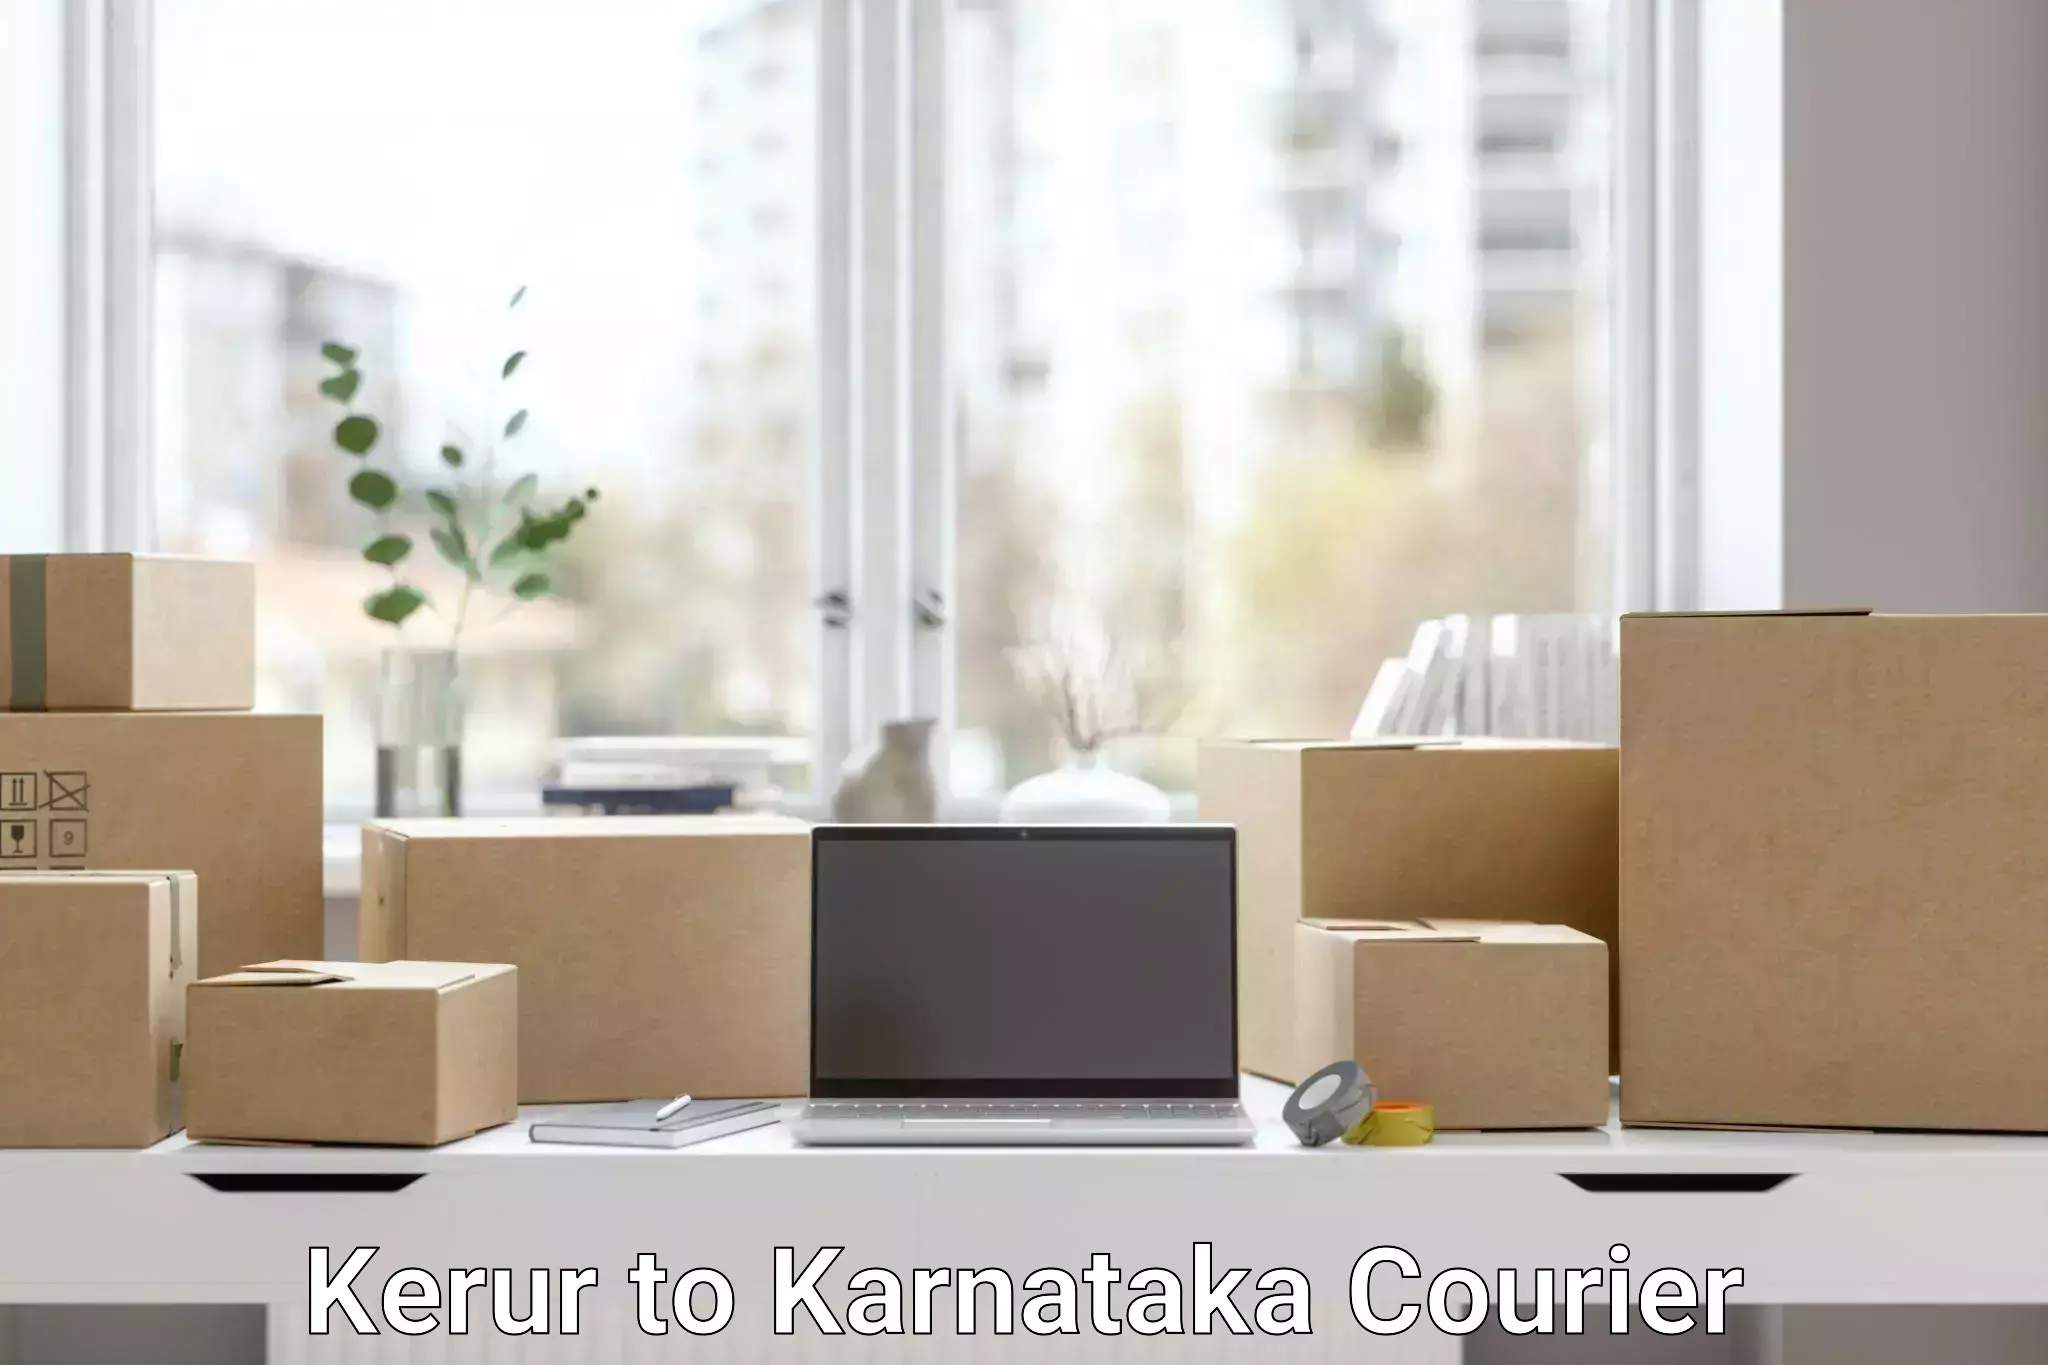 Efficient parcel service in Kerur to Mangalore Port